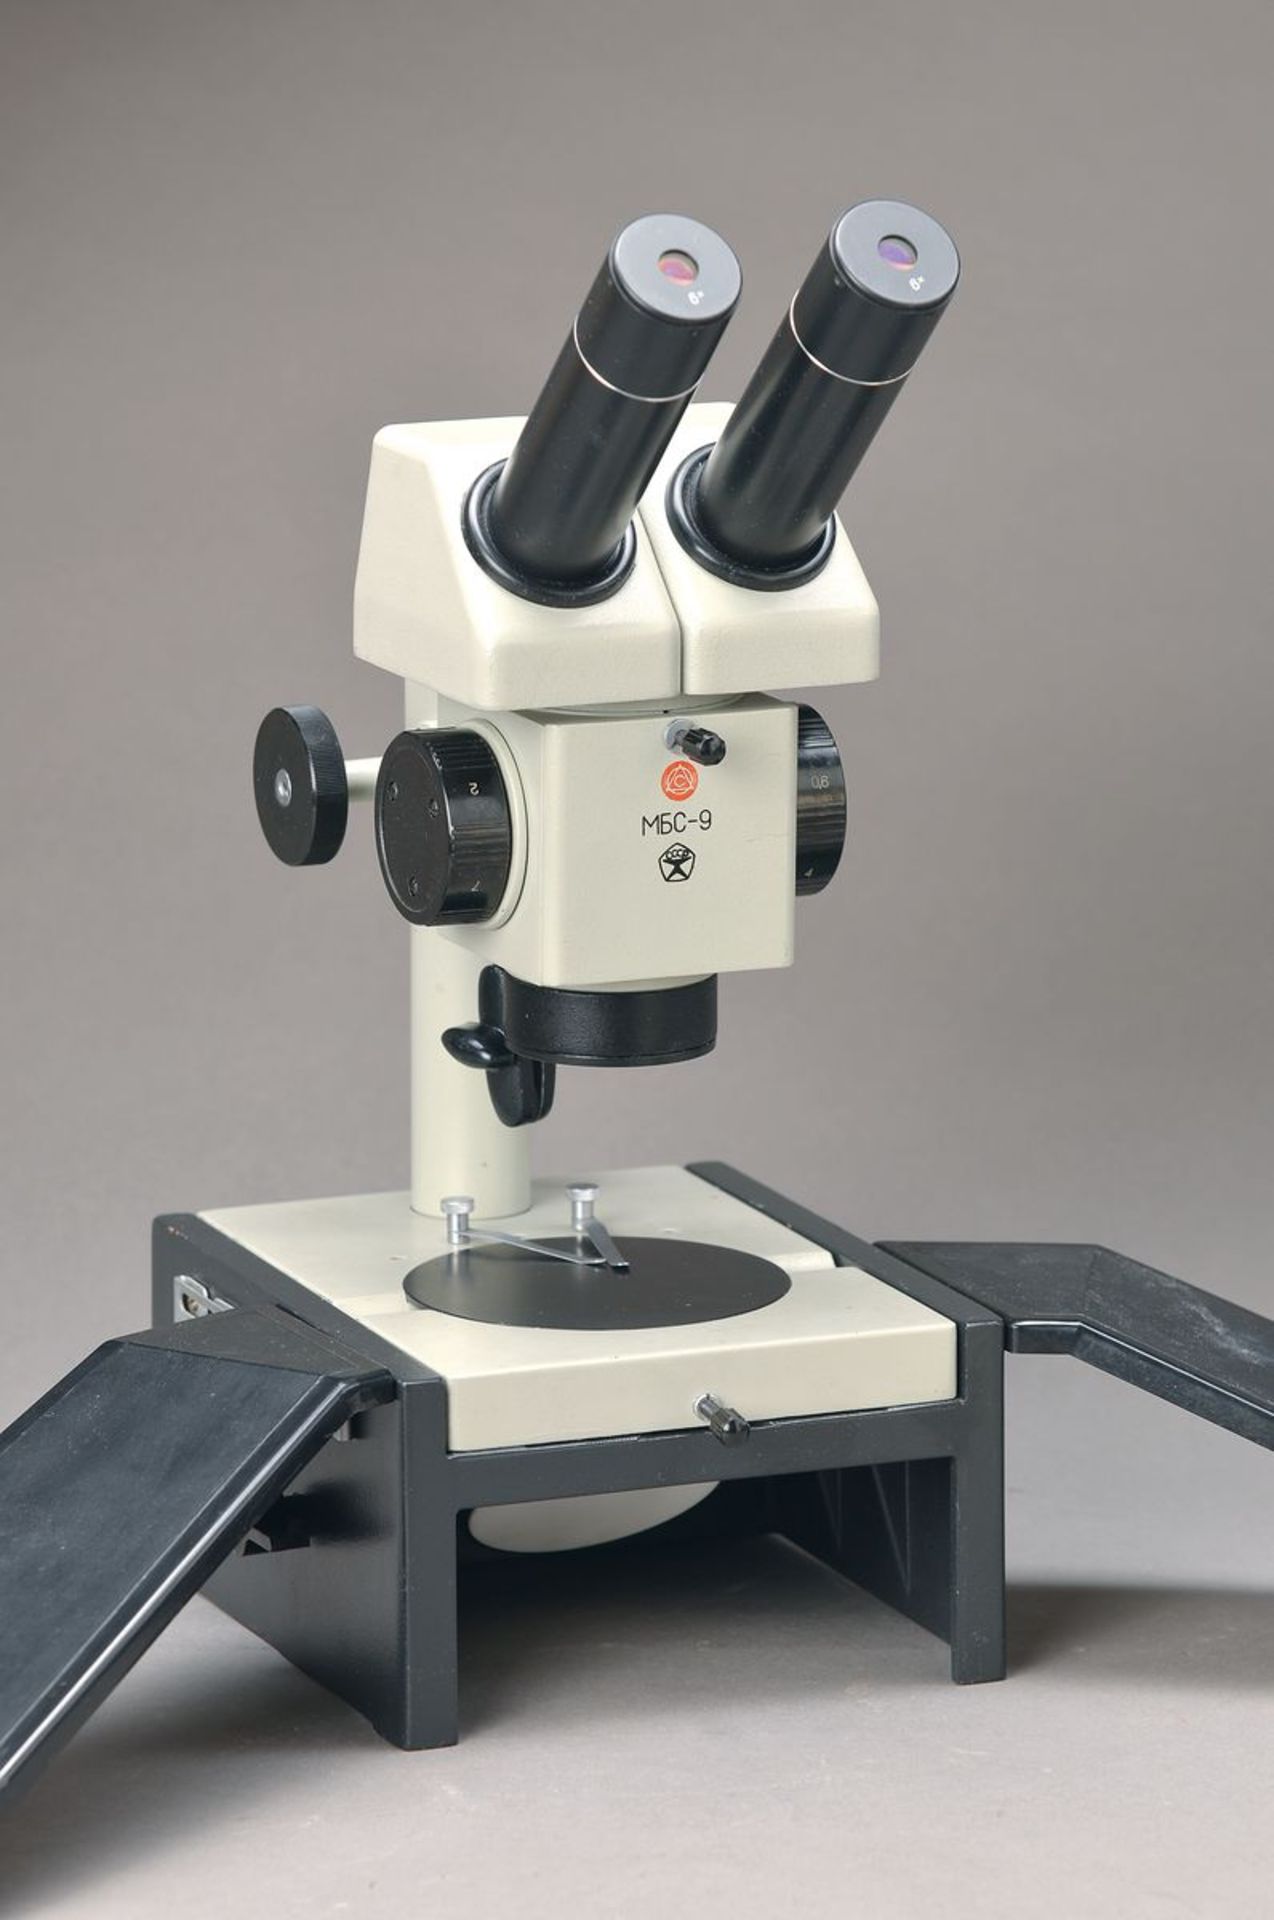 Stereoskopisches Präzisionsmikroskop für Uhrmacher, Juweliere, Techniker usw., Marke MBS 9, grau